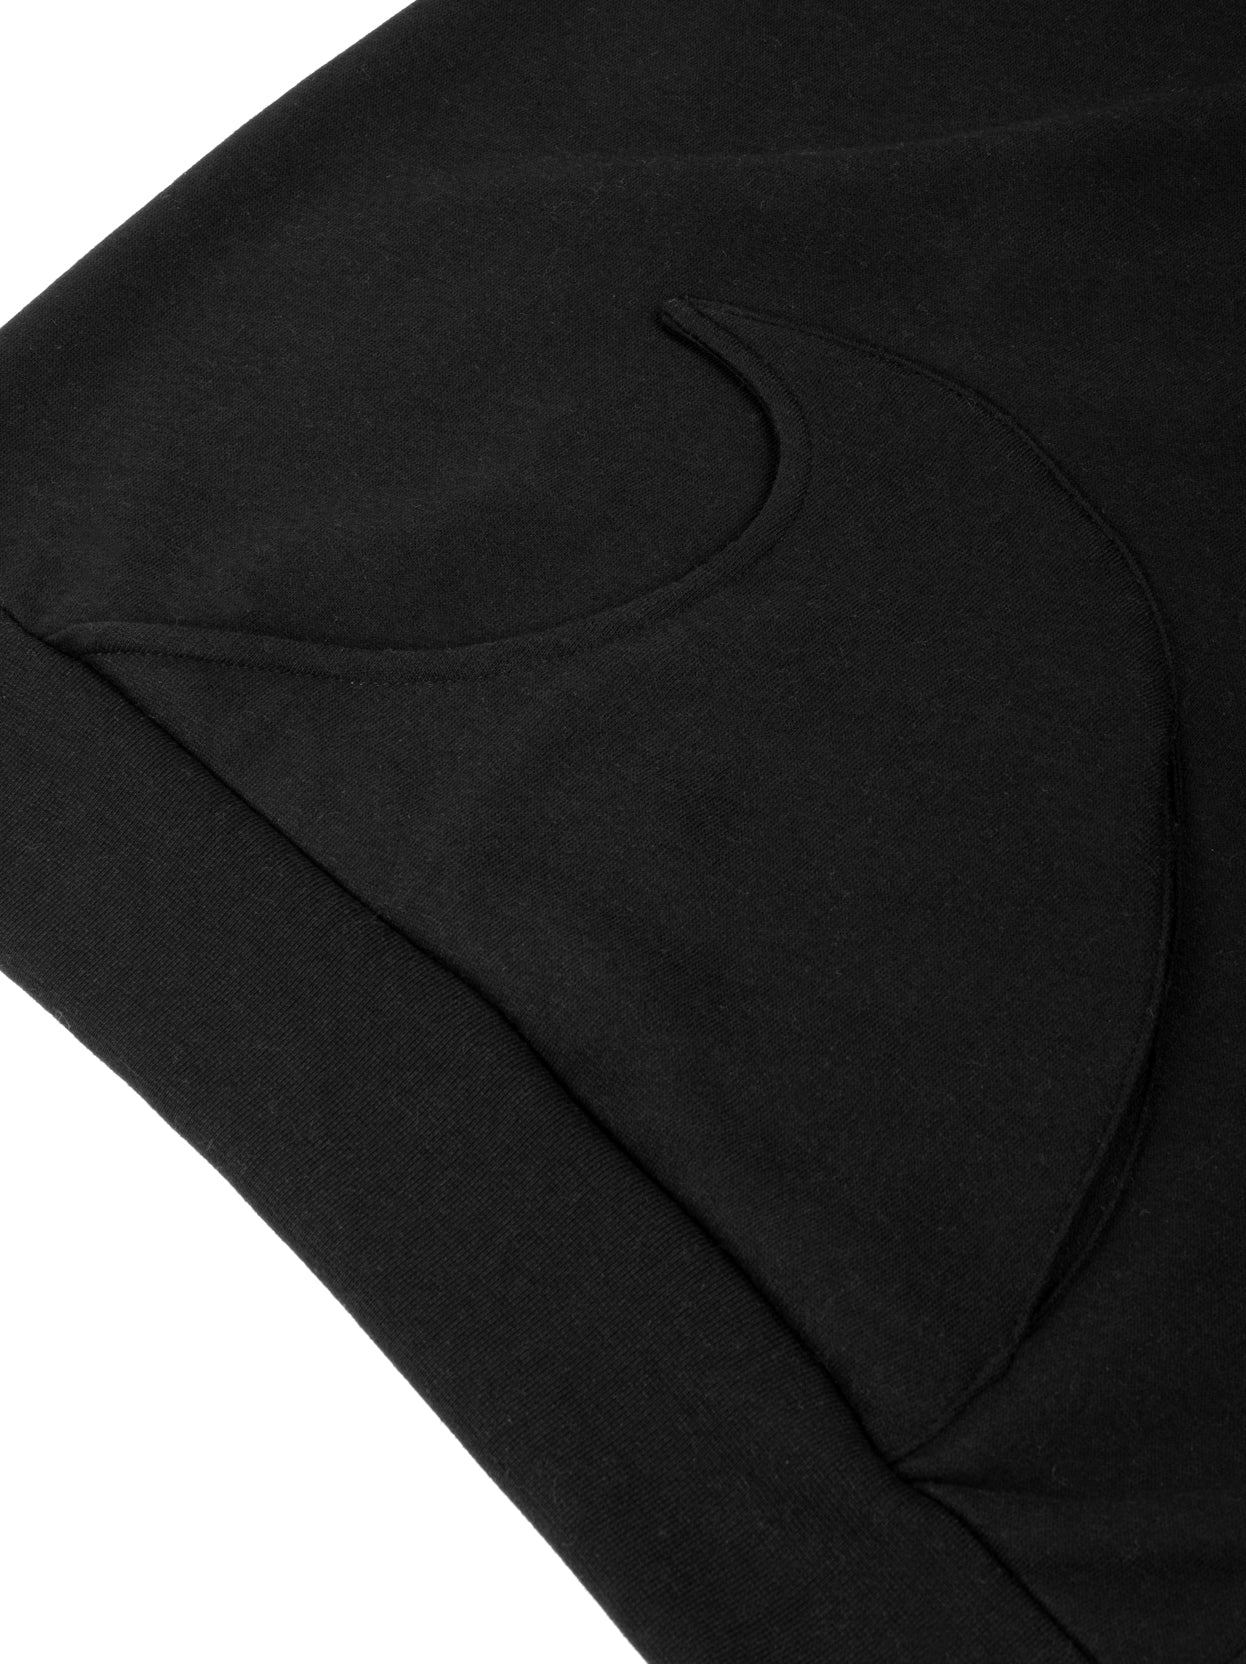 Black wave hoodie pocket